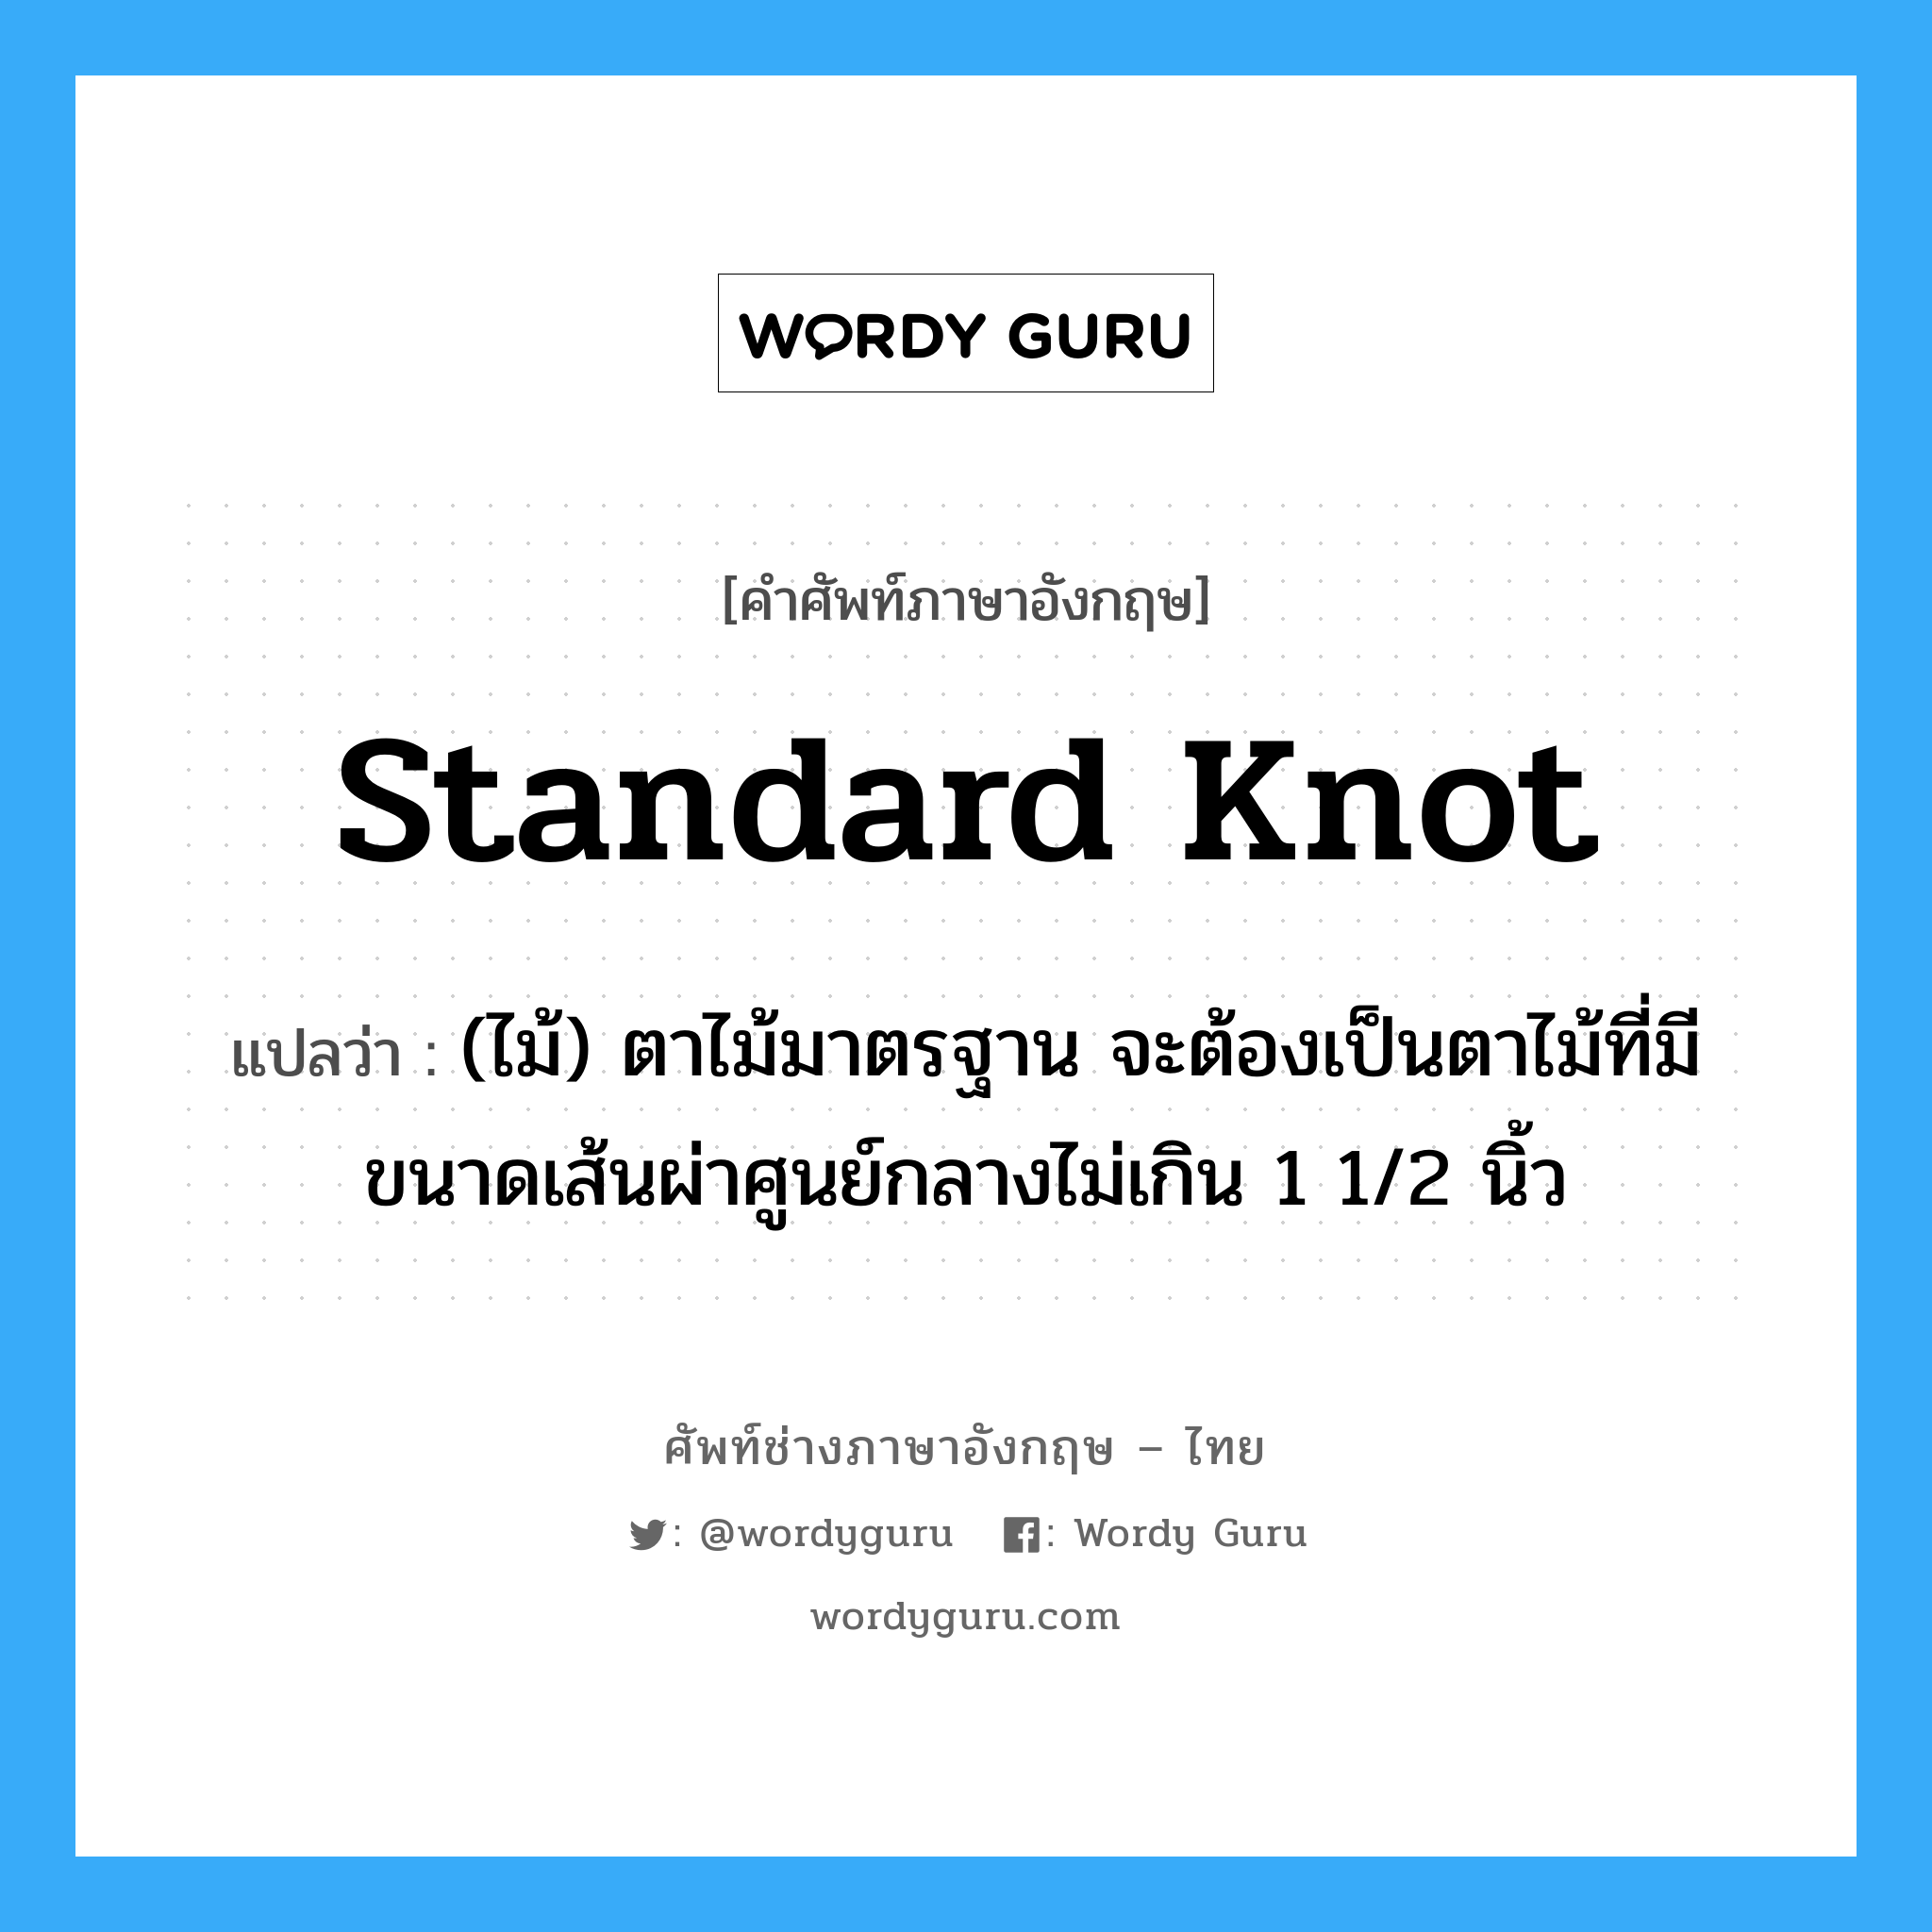 standard knot แปลว่า?, คำศัพท์ช่างภาษาอังกฤษ - ไทย standard knot คำศัพท์ภาษาอังกฤษ standard knot แปลว่า (ไม้) ตาไม้มาตรฐาน จะต้องเป็นตาไม้ที่มีขนาดเส้นผ่าศูนย์กลางไม่เกิน 1 1/2 นิ้ว